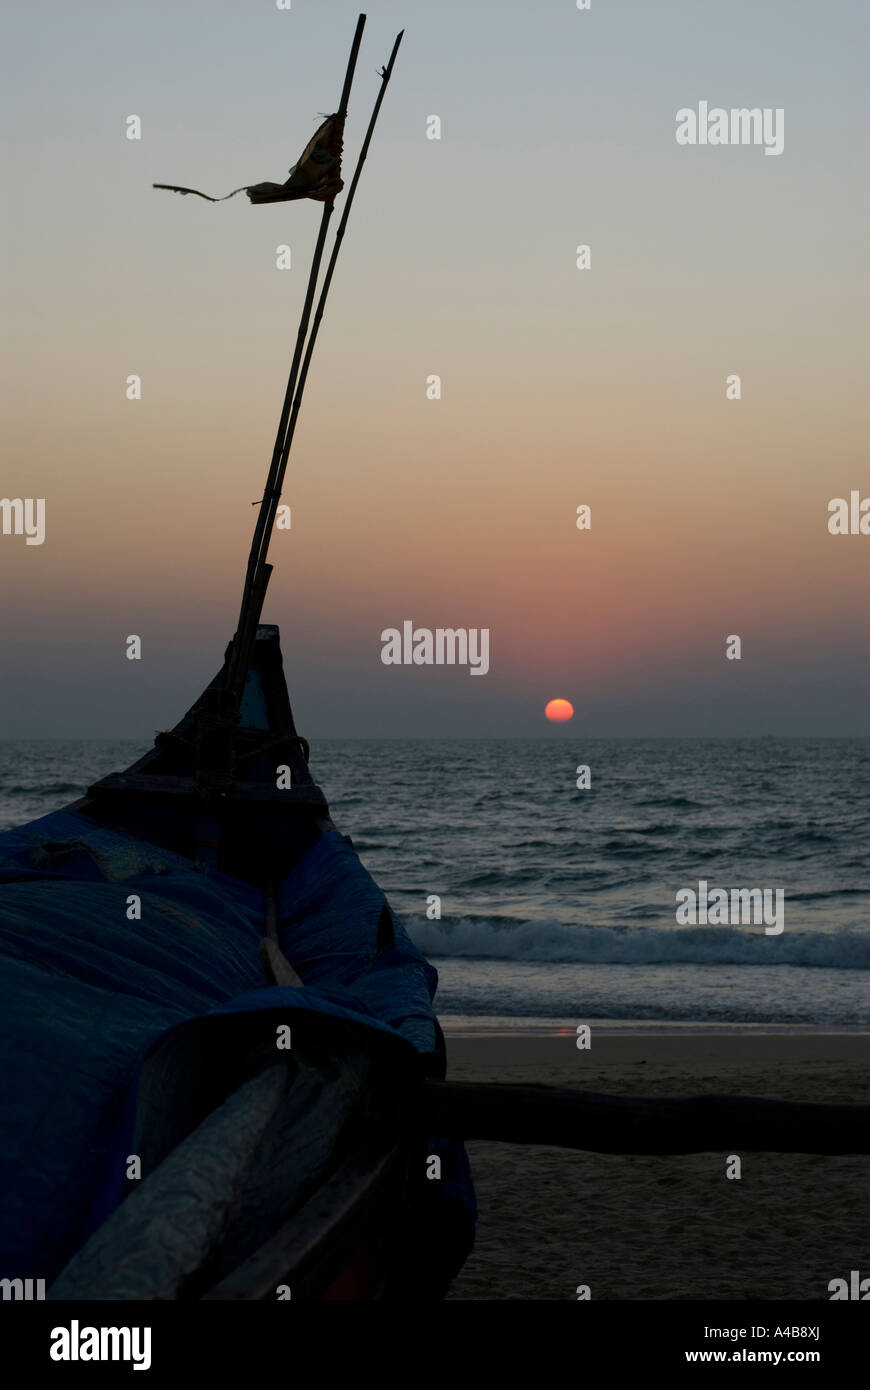 Stock Bild von Benaulim Beach in Goa Indien bei Sonnenuntergang mit Angeln Boot Silhouette und Flagge Stockfoto